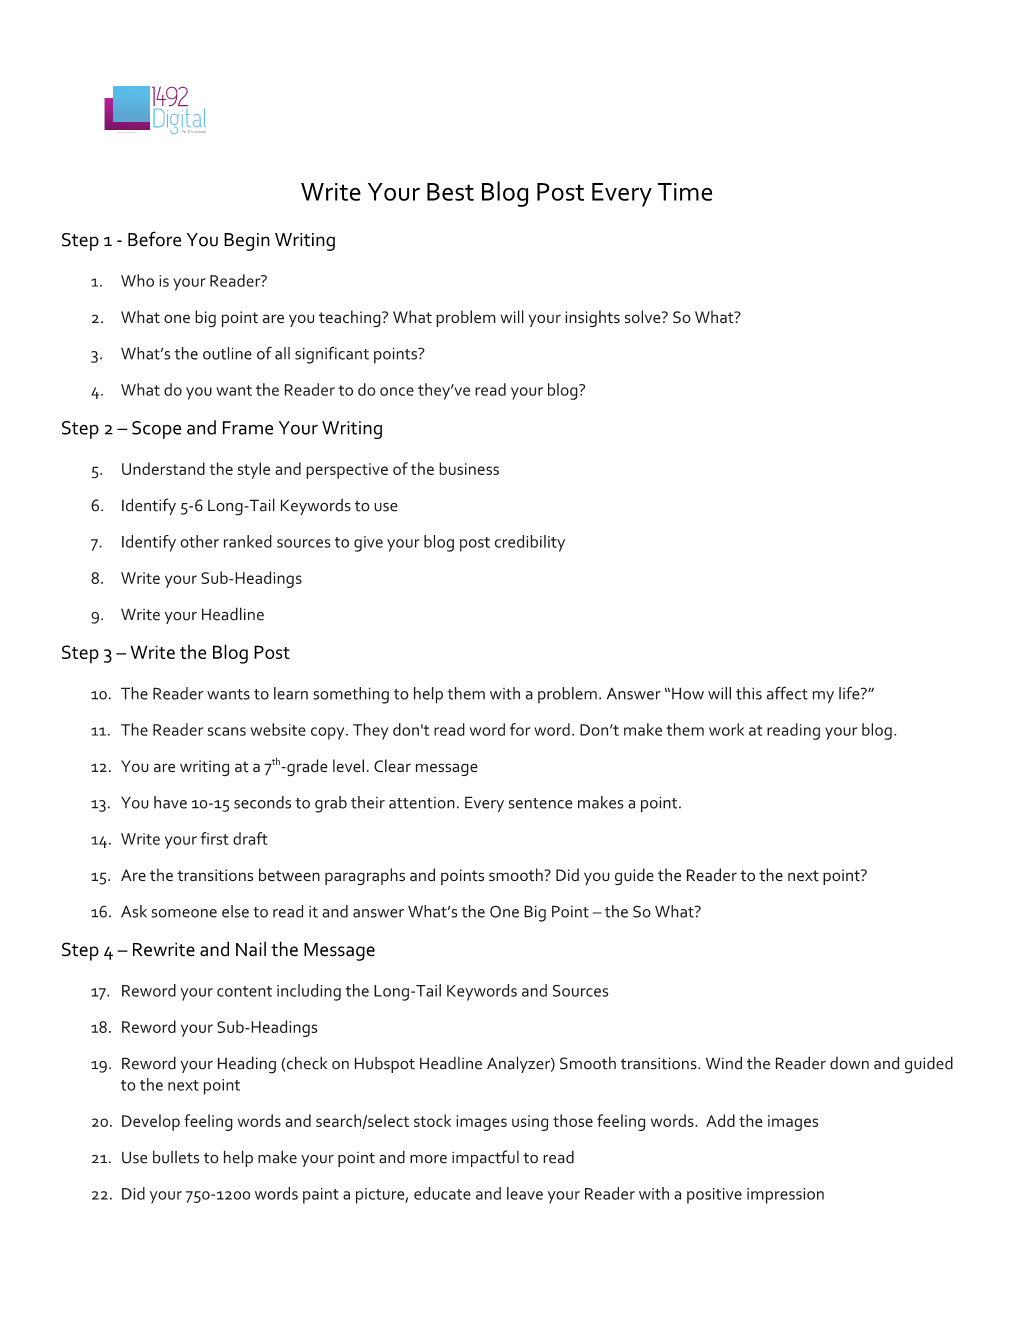 Step 1 - Before You Begin Writing